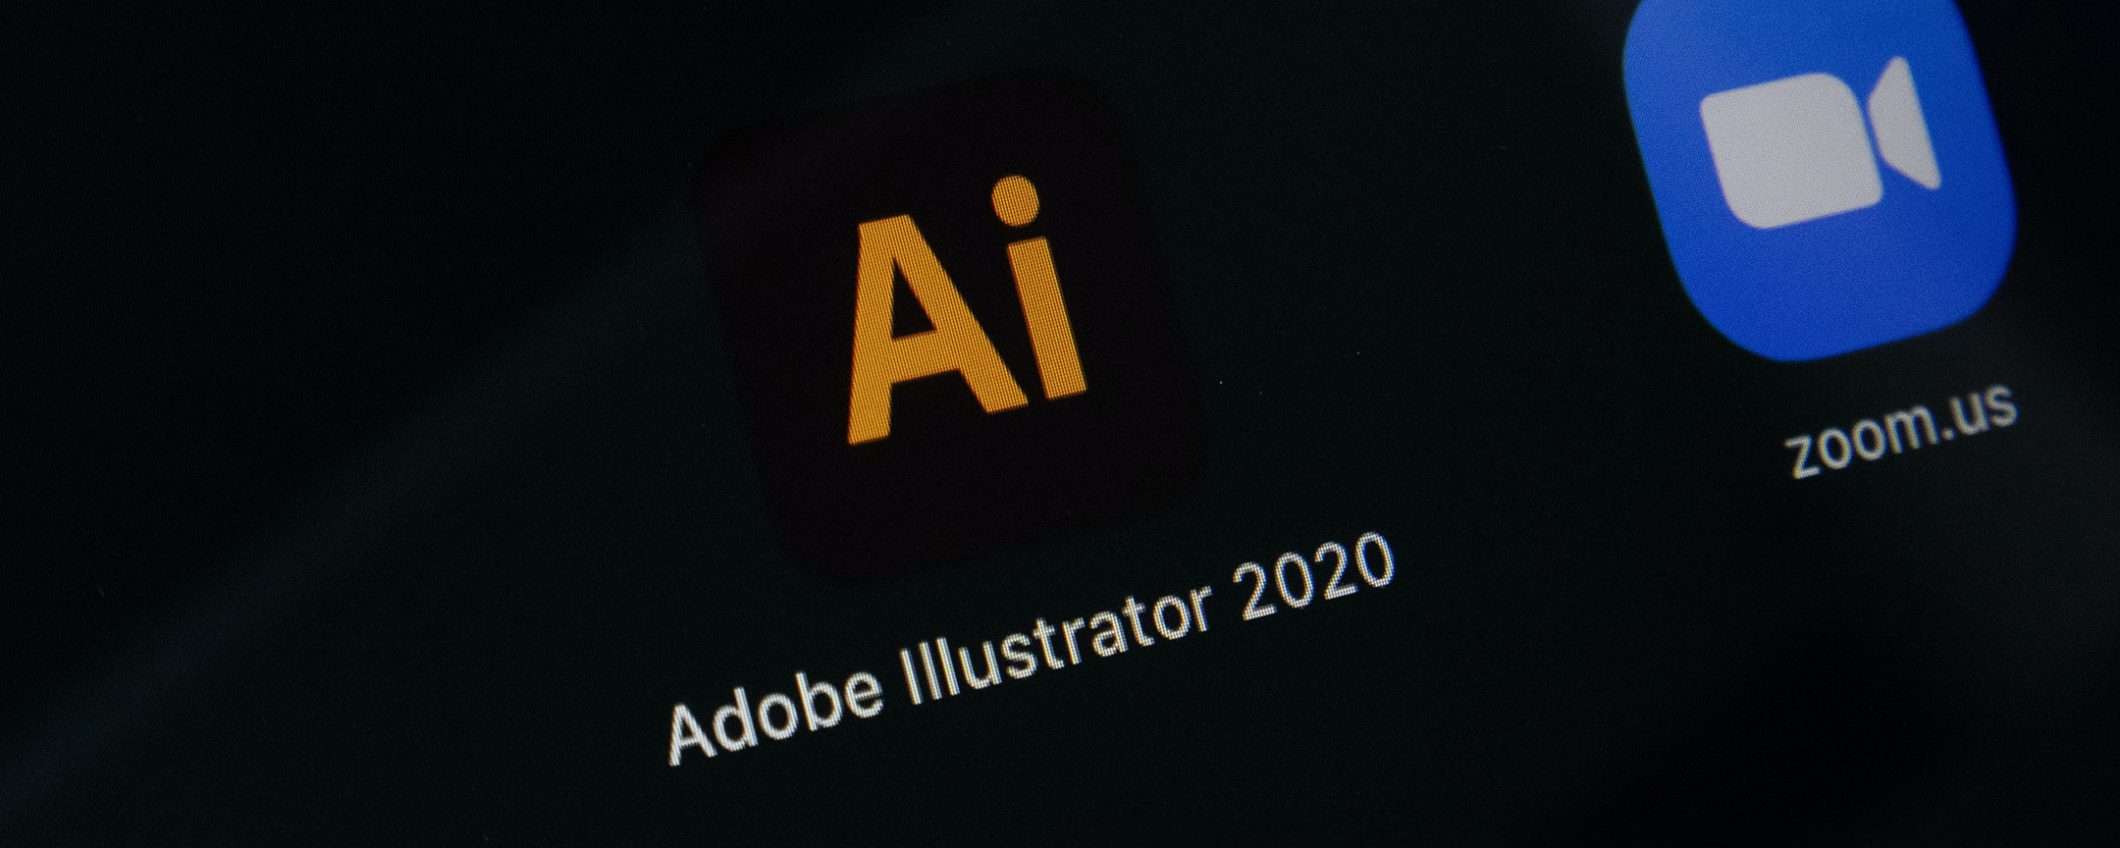 Come imparare ad utilizzare Adobe Illustrator?